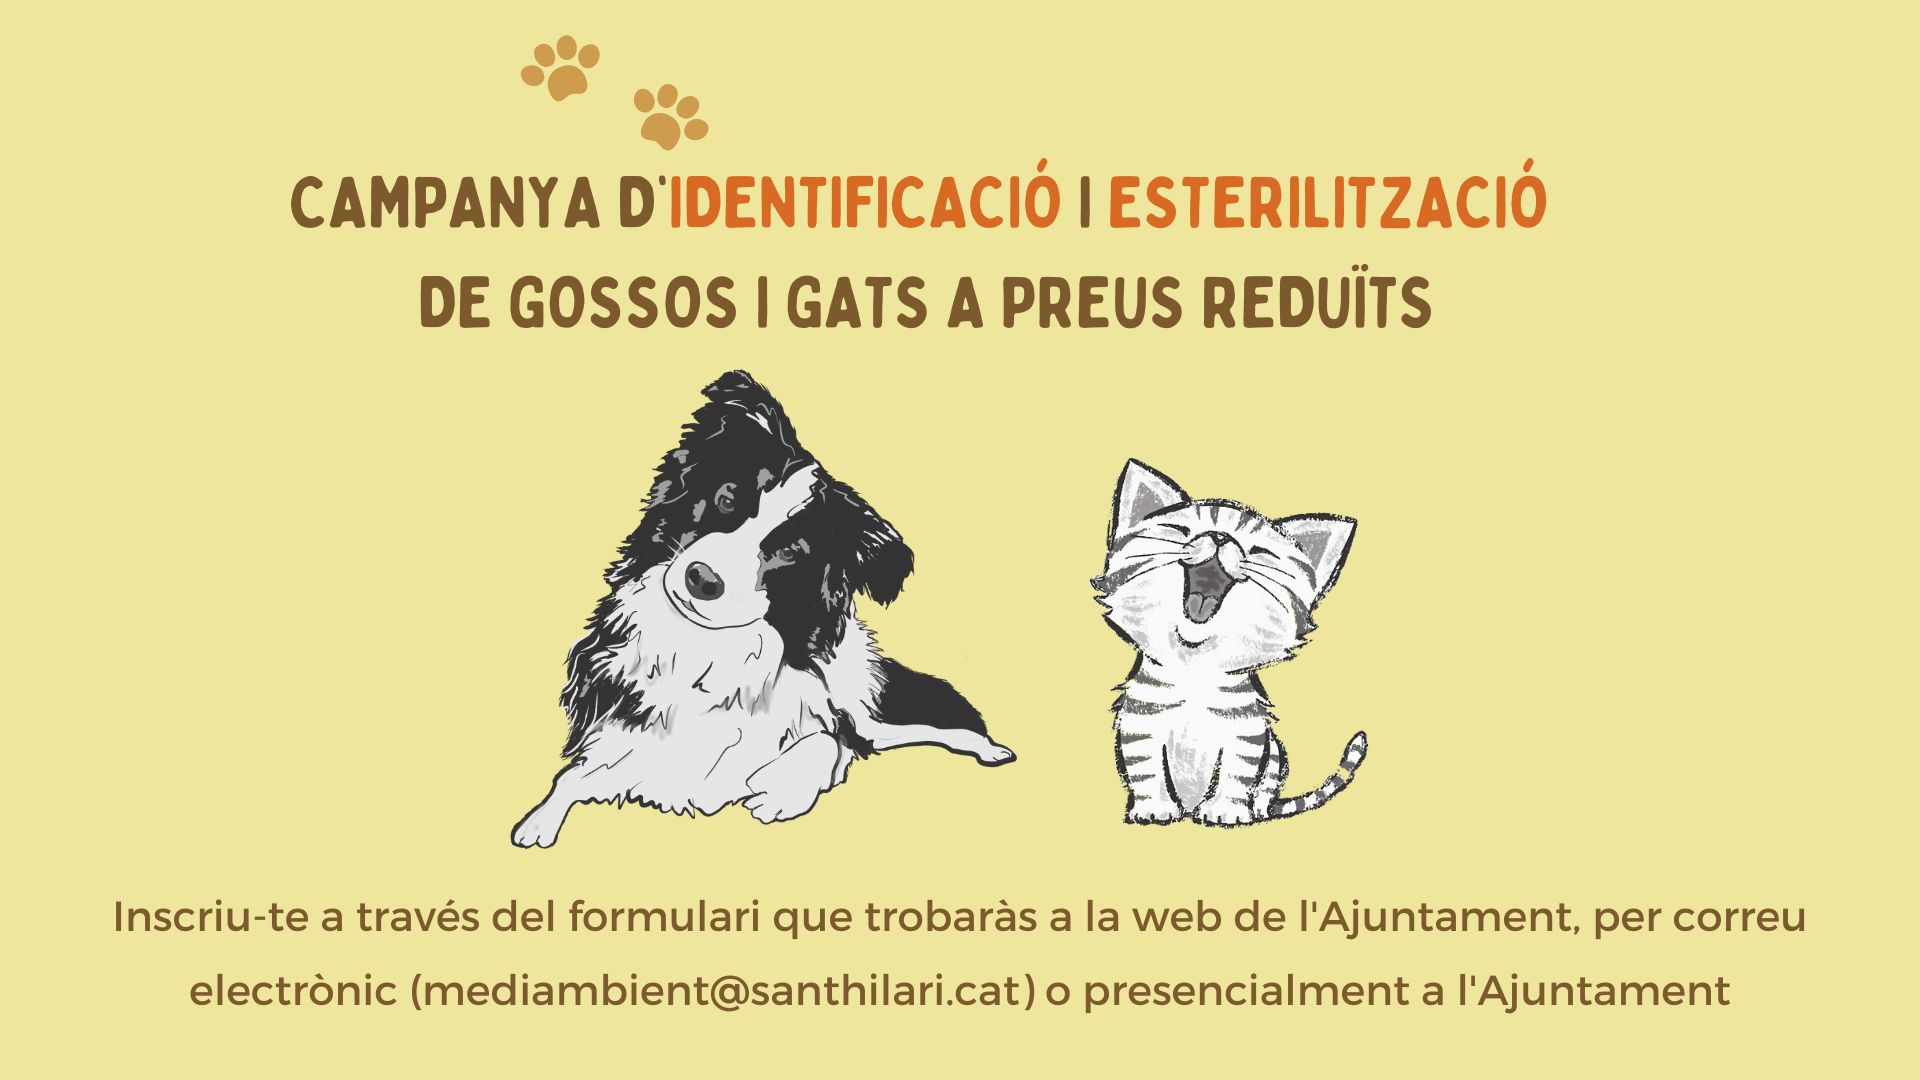 Campanya d’identificació i esterilització de gossos i gats a preus reduïts